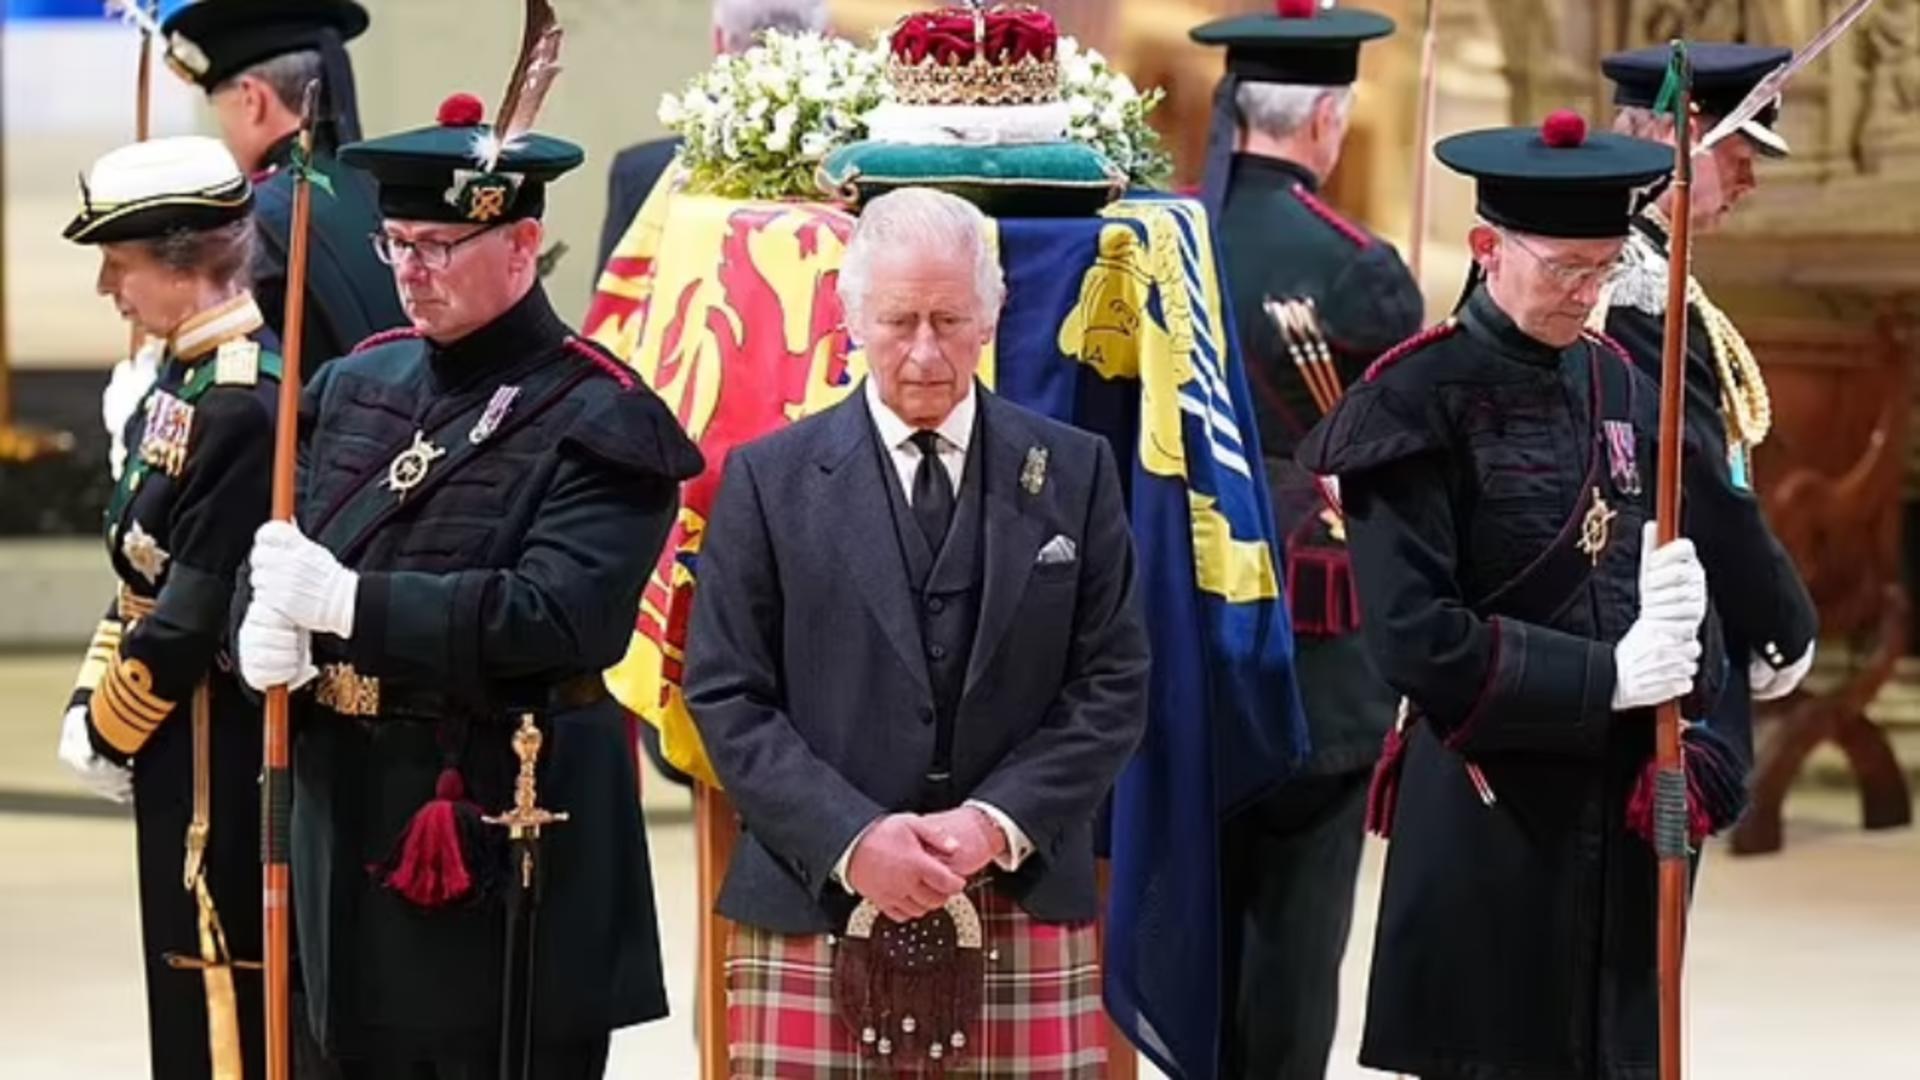 Funeralii Elisabeta a II-a | Gest suprem la catafalcul Reginei - Ce au făcut regele Charles al III-lea și cei 3 frați ai săi - VIDEO